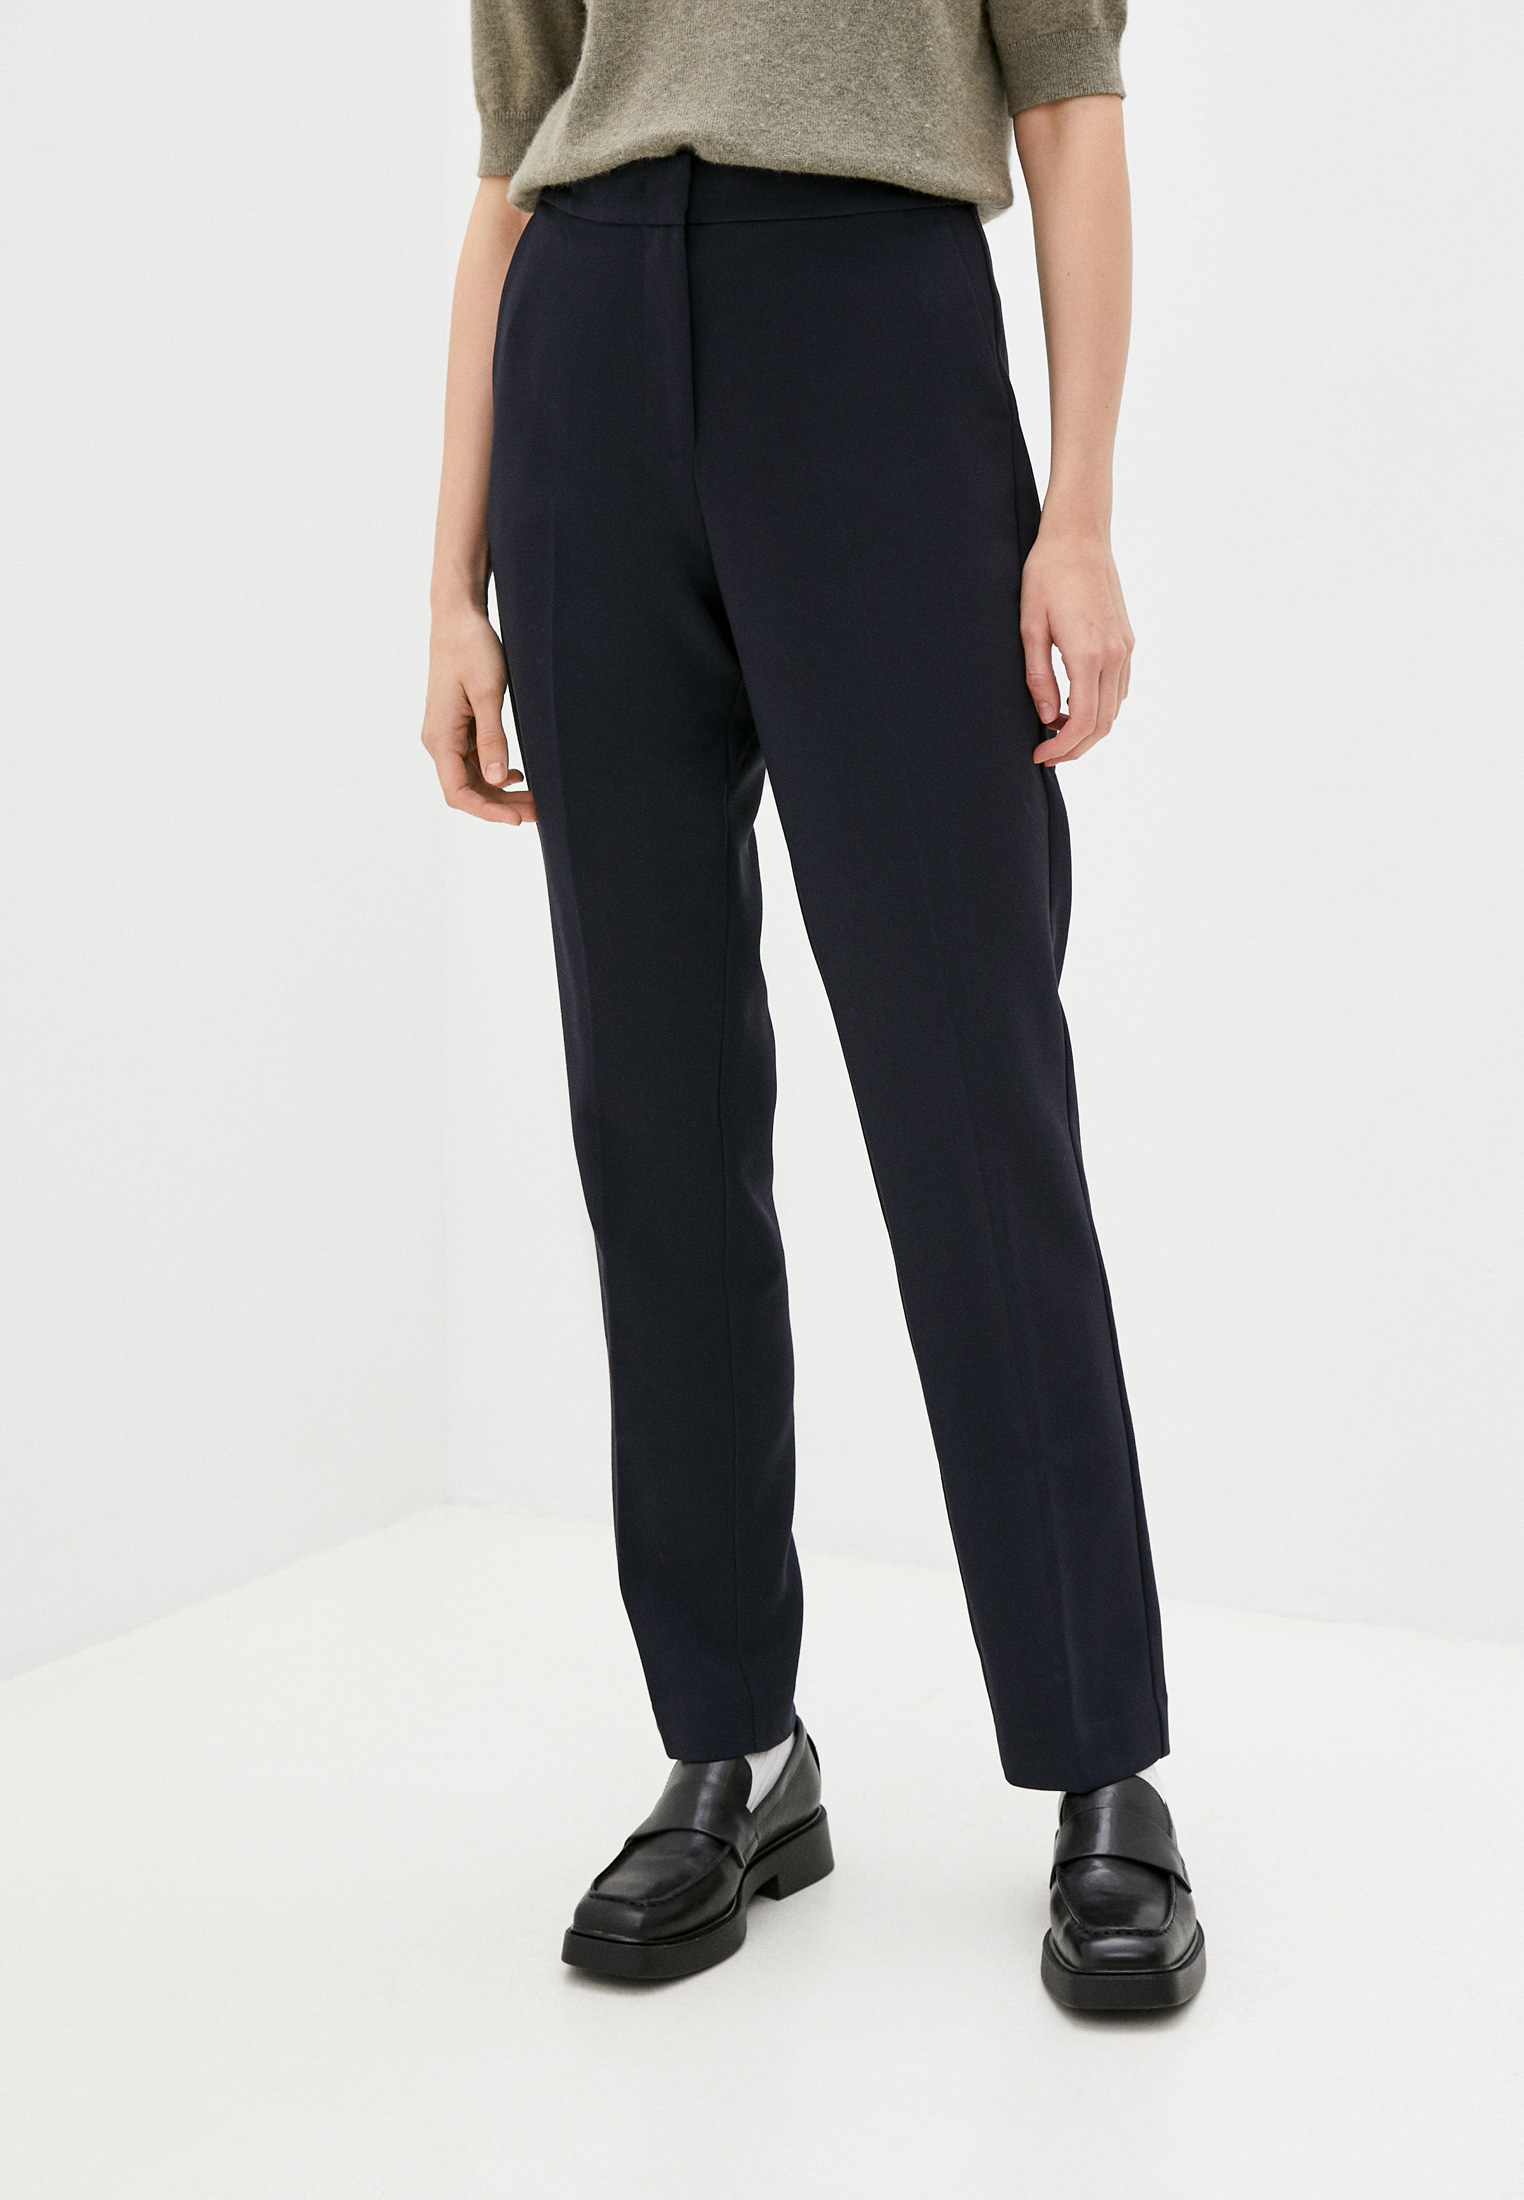 Женские классические брюки Tommy Hilfiger (Томми Хилфигер) WW0WW29541  купить за 7690 руб.